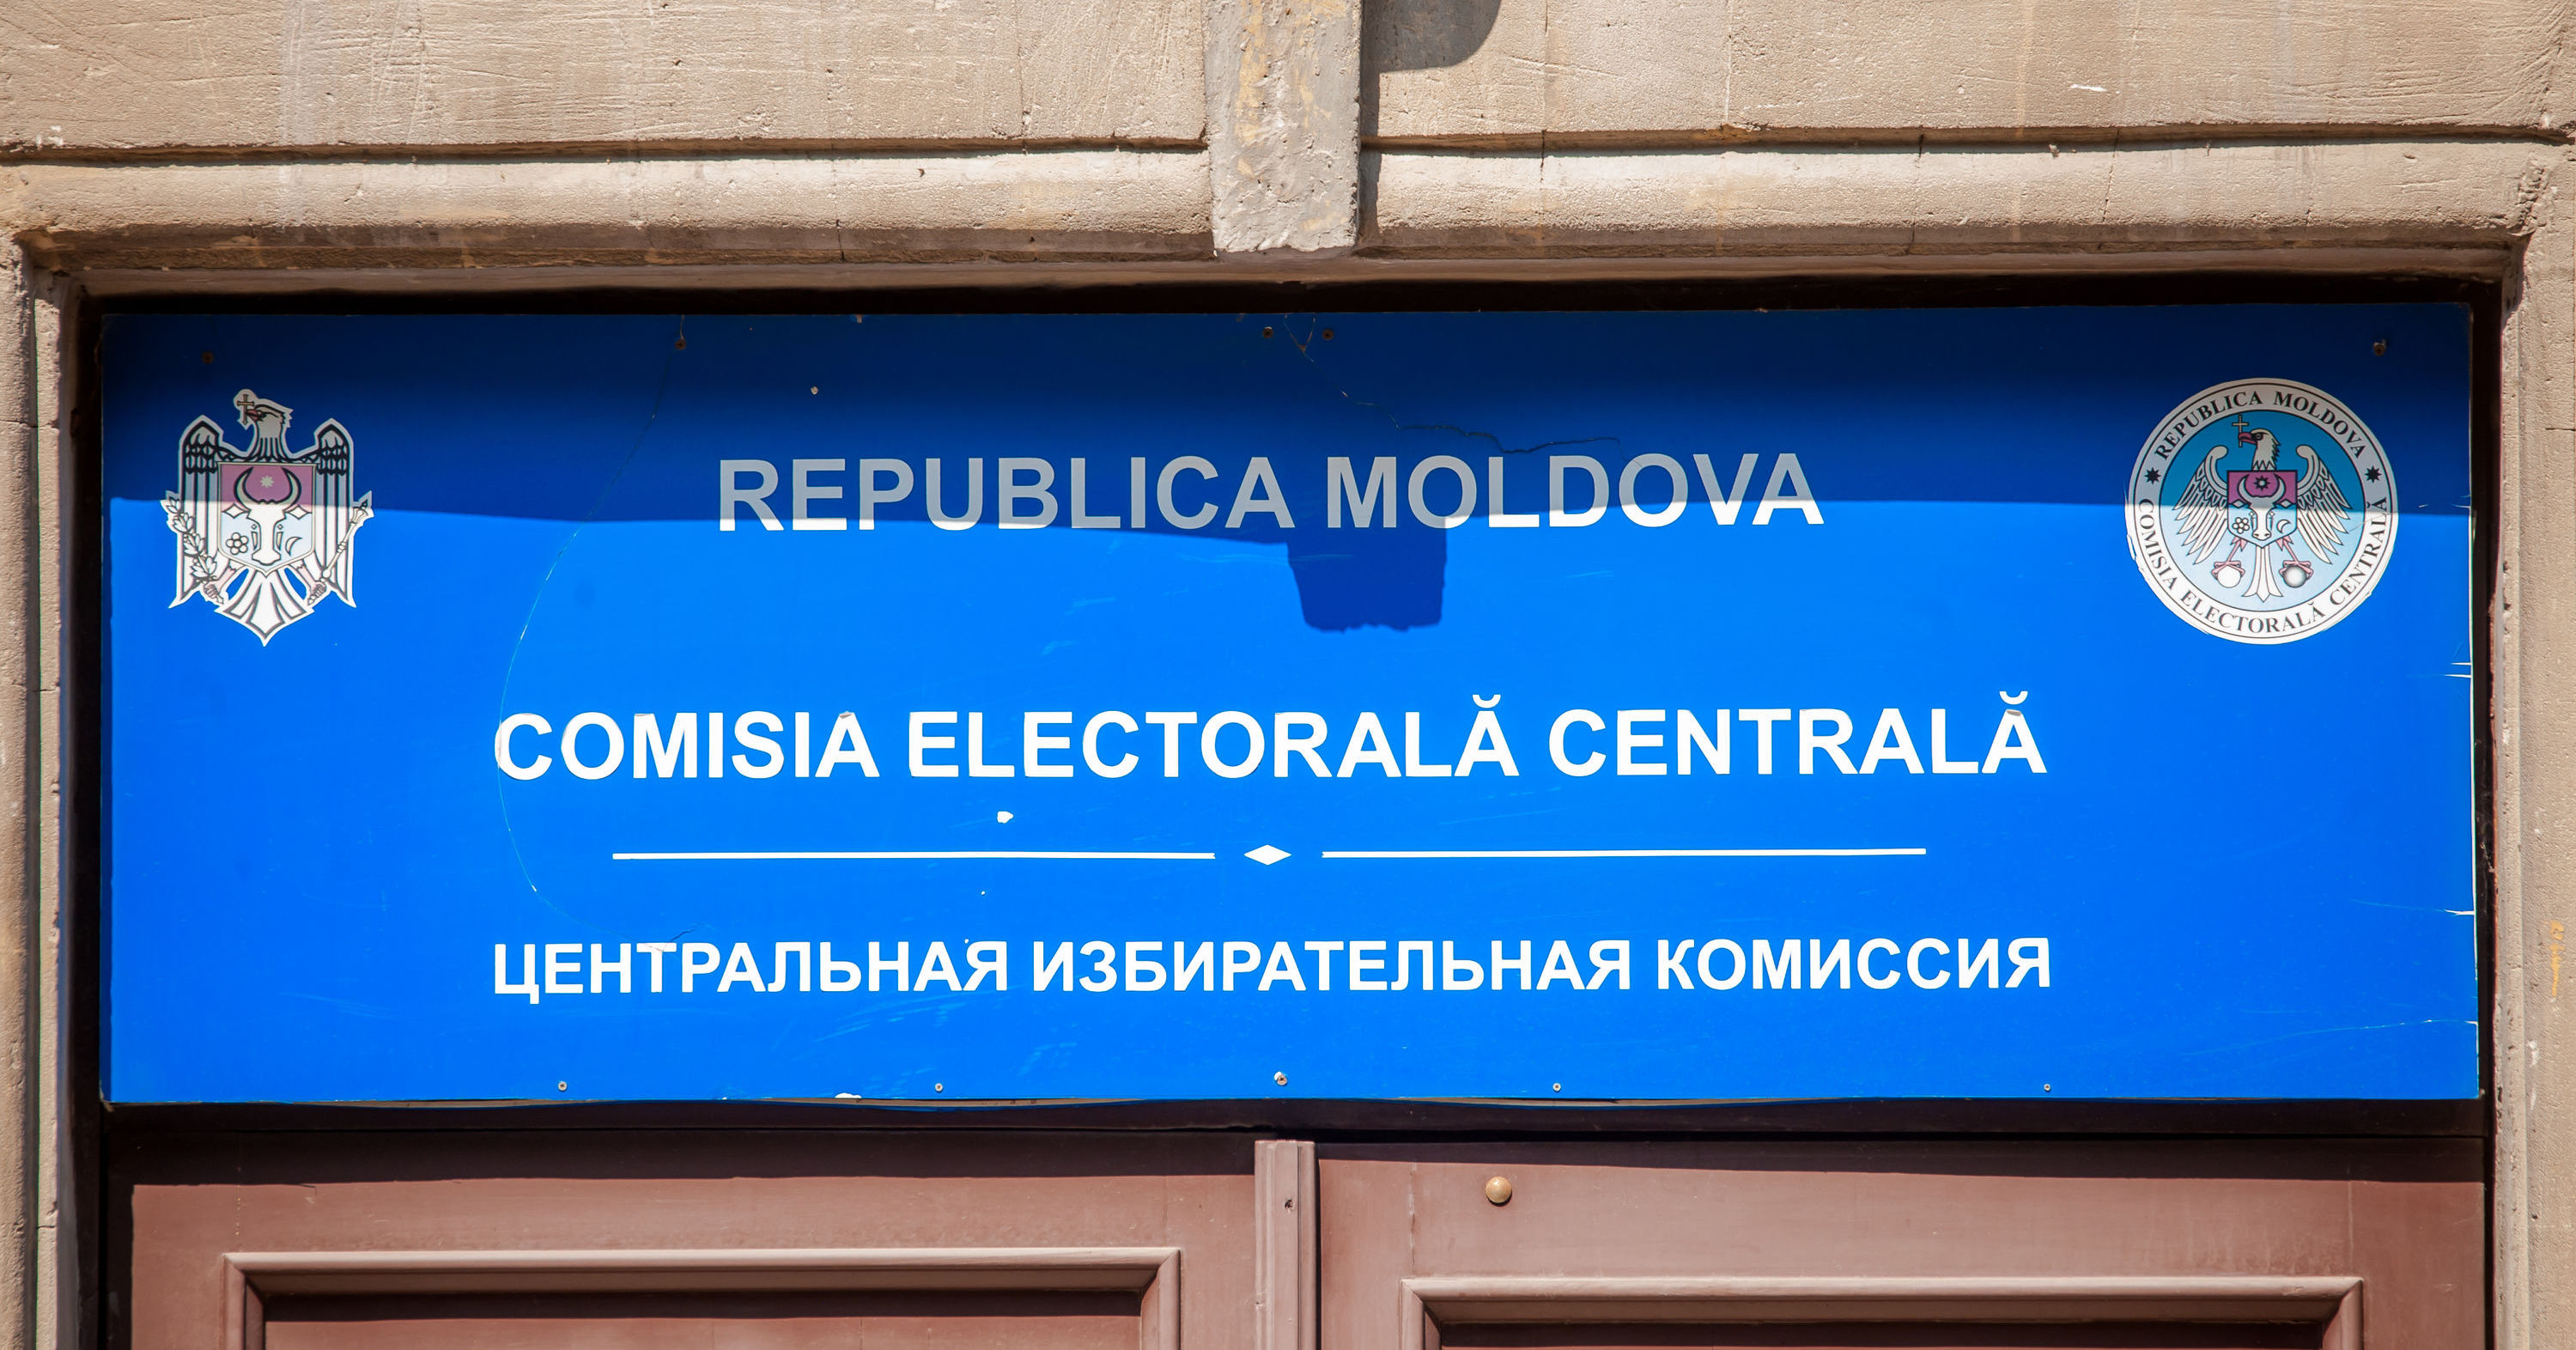 ЦИК дала разрешение на проведение первых опросов в предвыборный период. Фото Point.md.